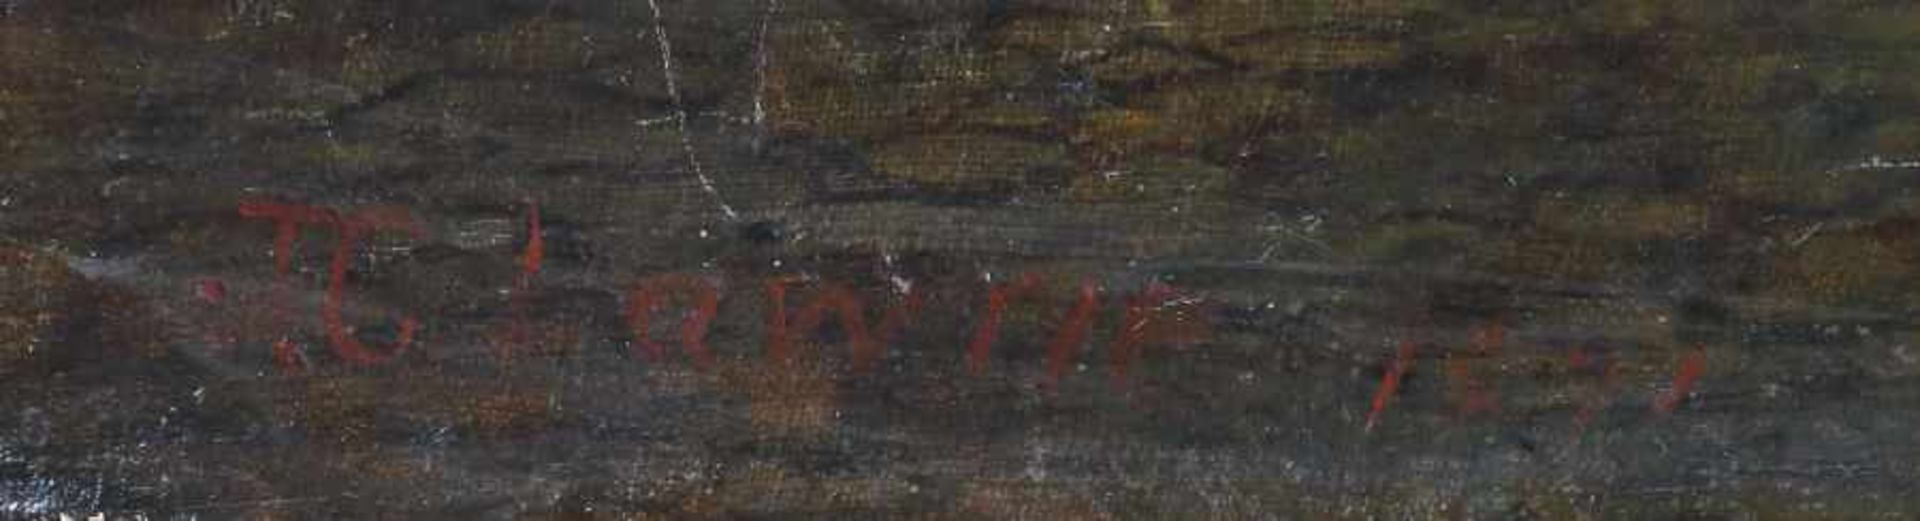 Lawrie, J. C.Maler des 19. Jh. "Galloway Rinder an der Tränke", Blick auf schottische Landschaft - Bild 3 aus 4